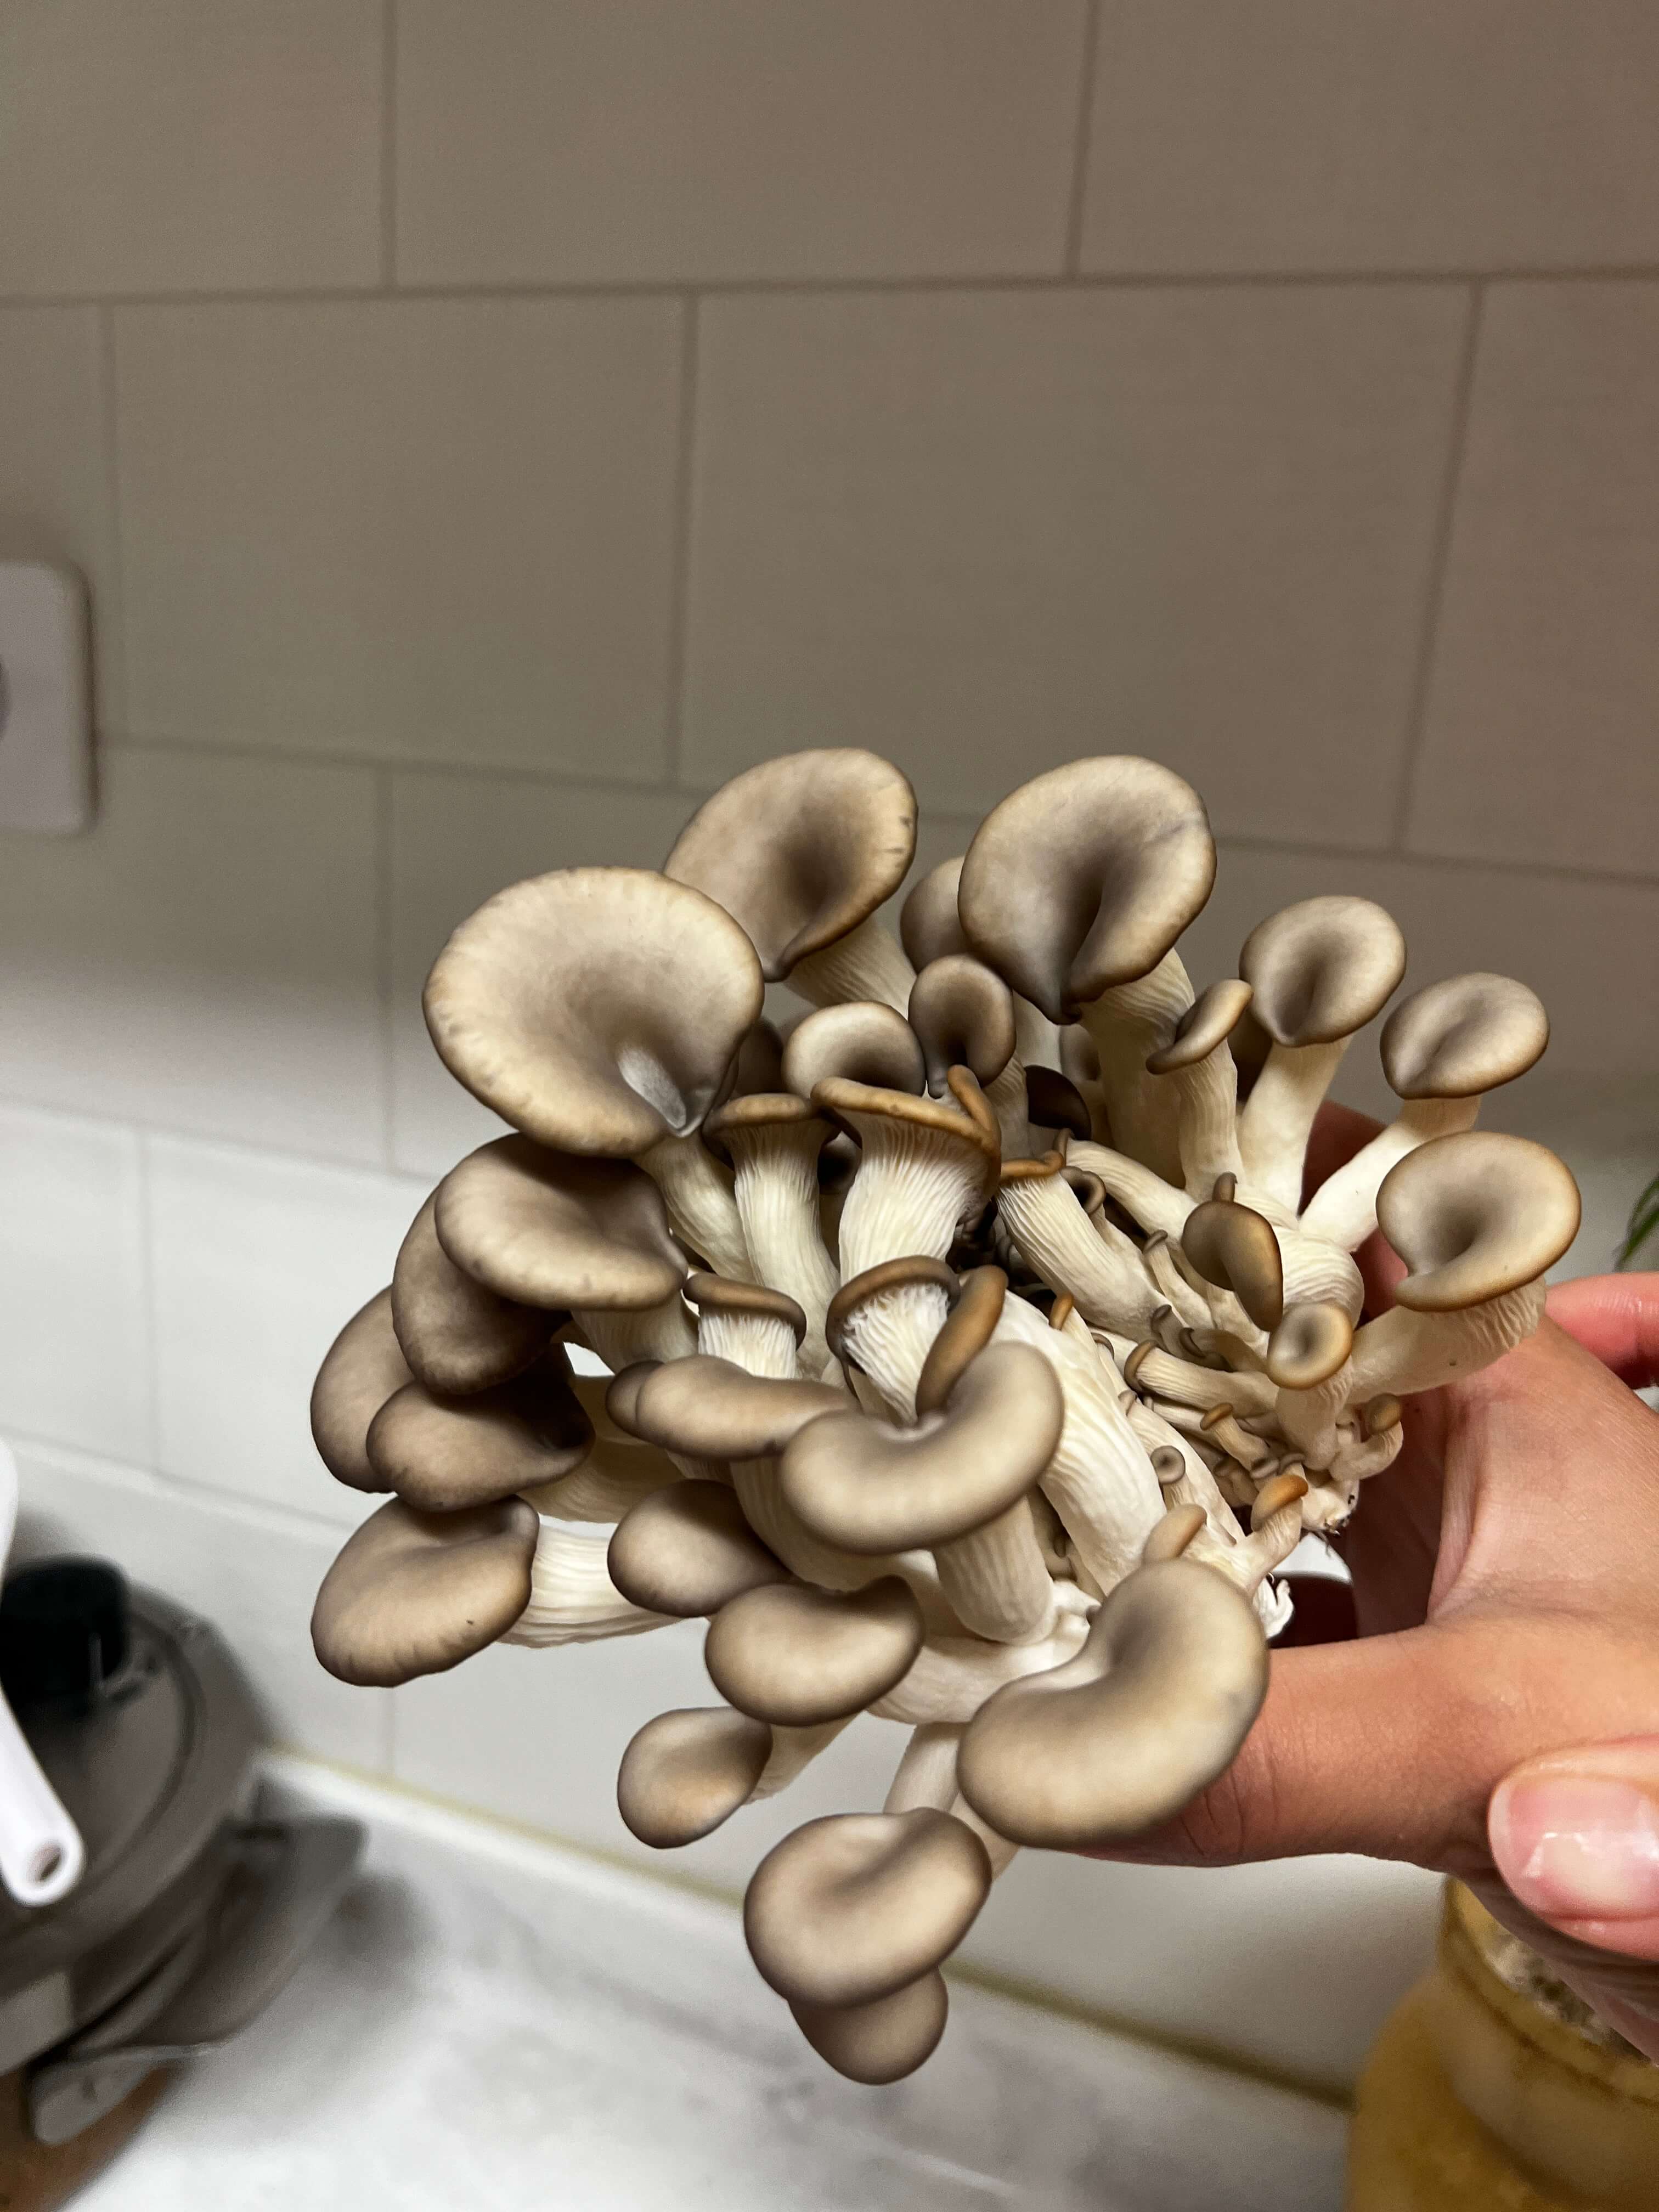 드디어 수확한 느타리버섯